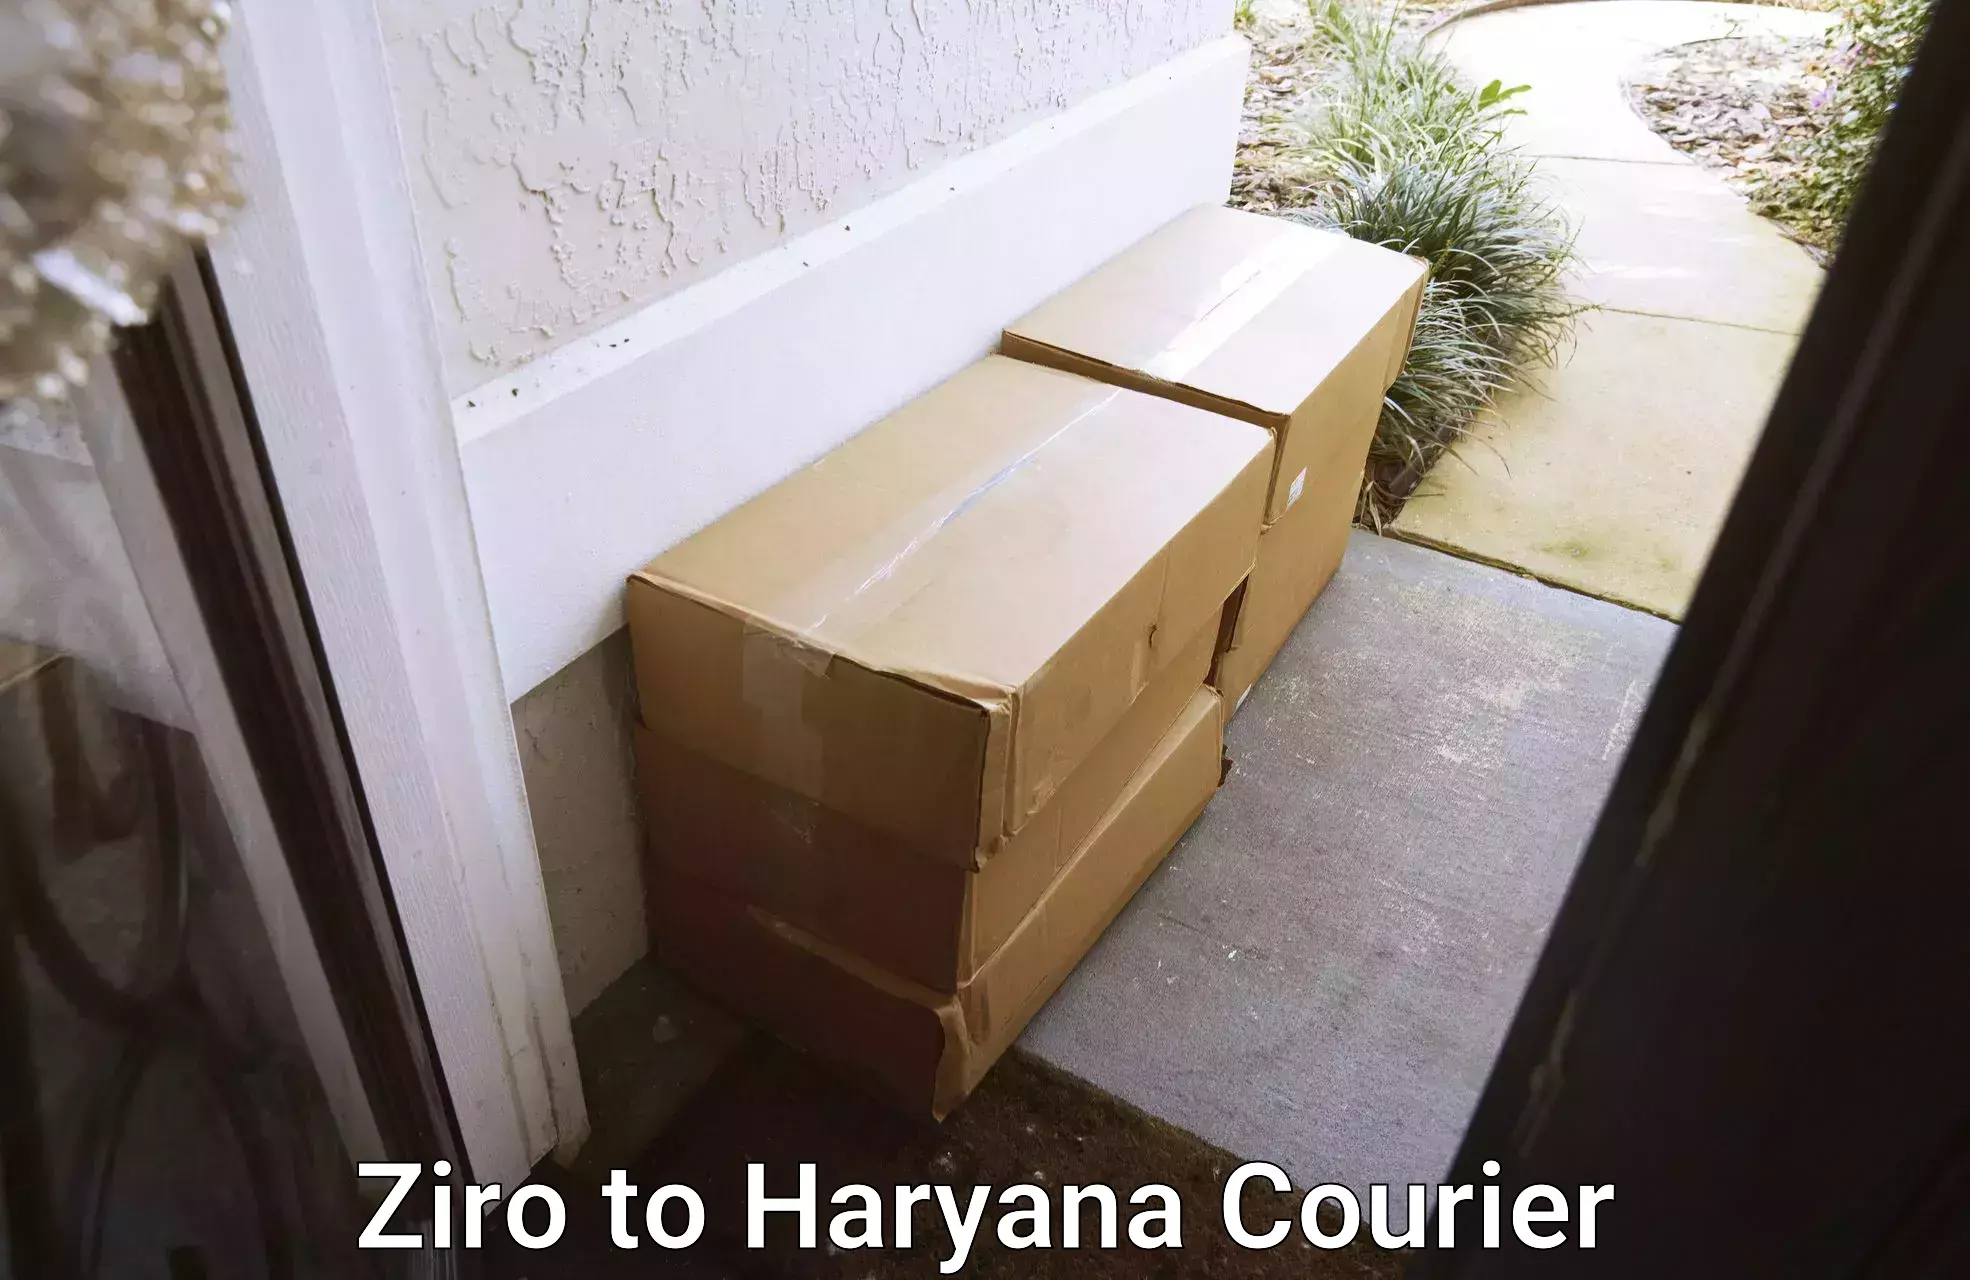 Customer-centric shipping Ziro to Narwana